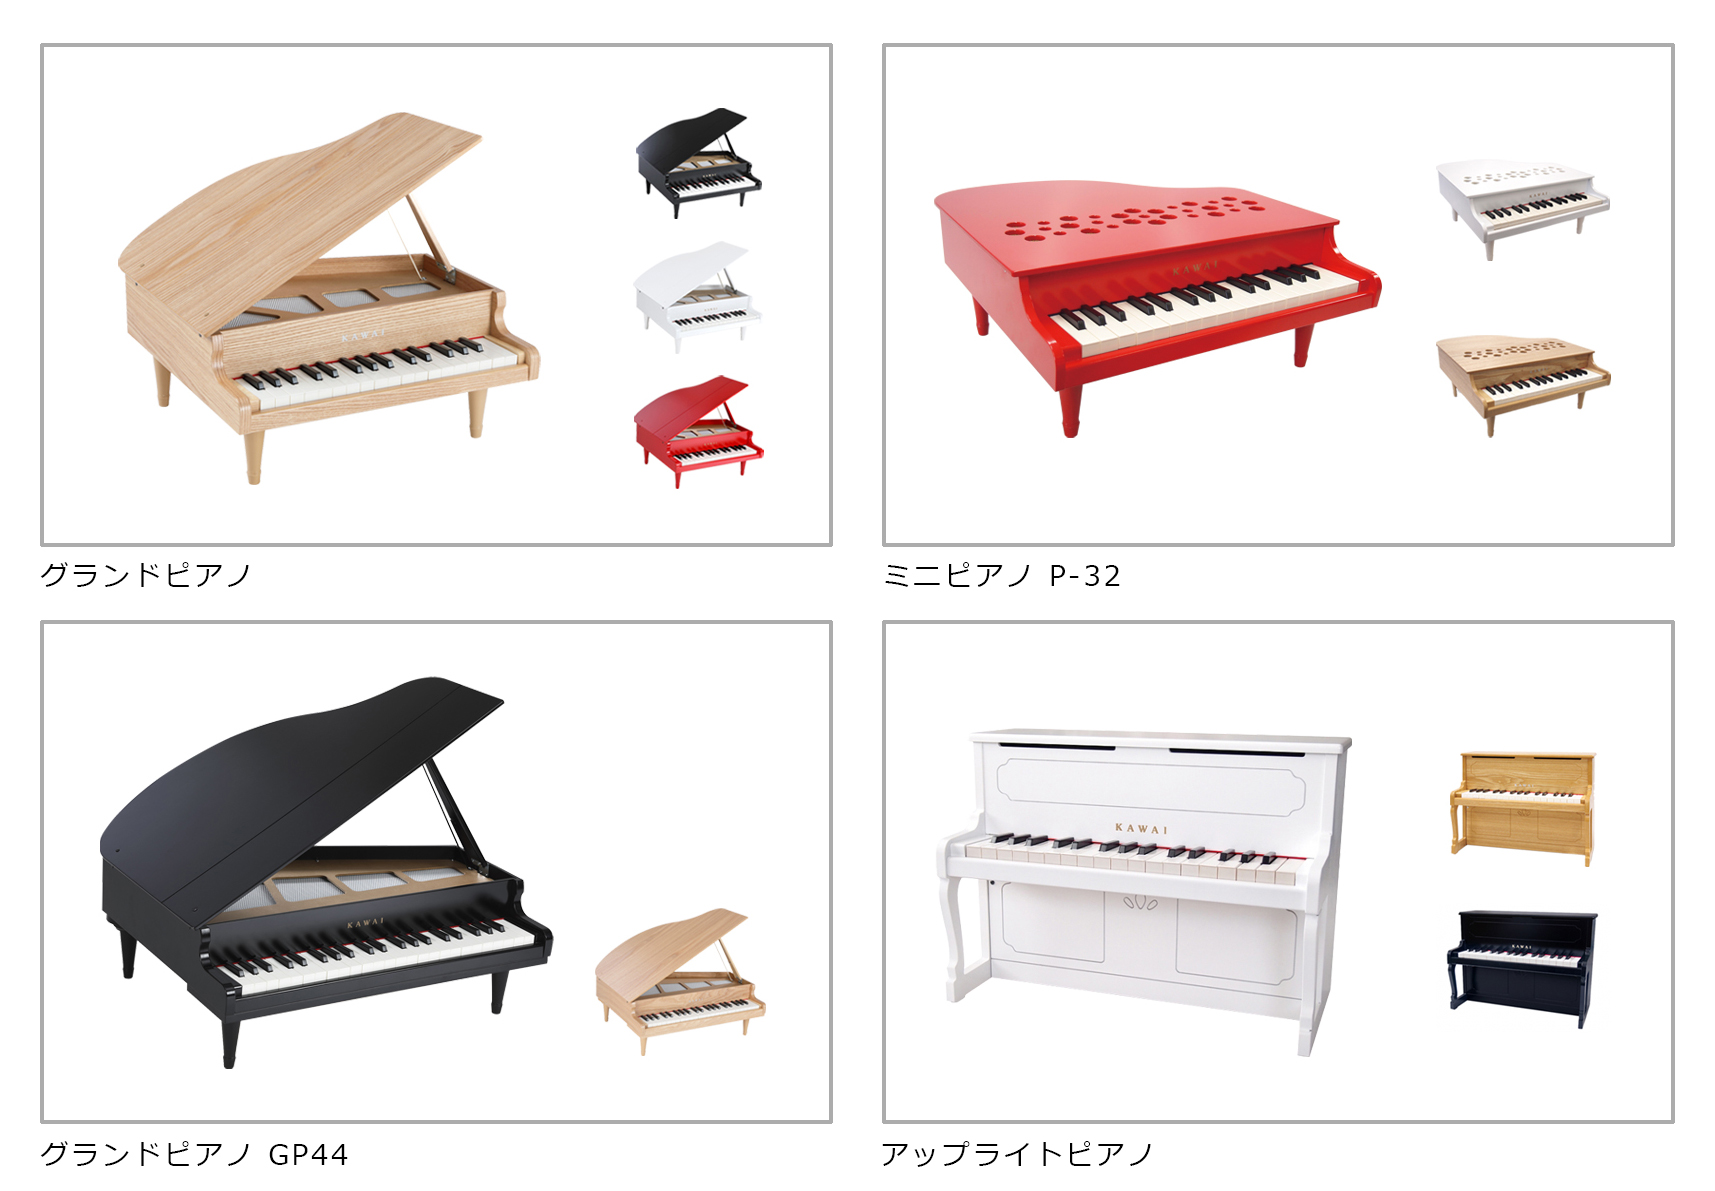 カワイミニピアノ公式オンラインショップ 取り扱い製品を追加しました